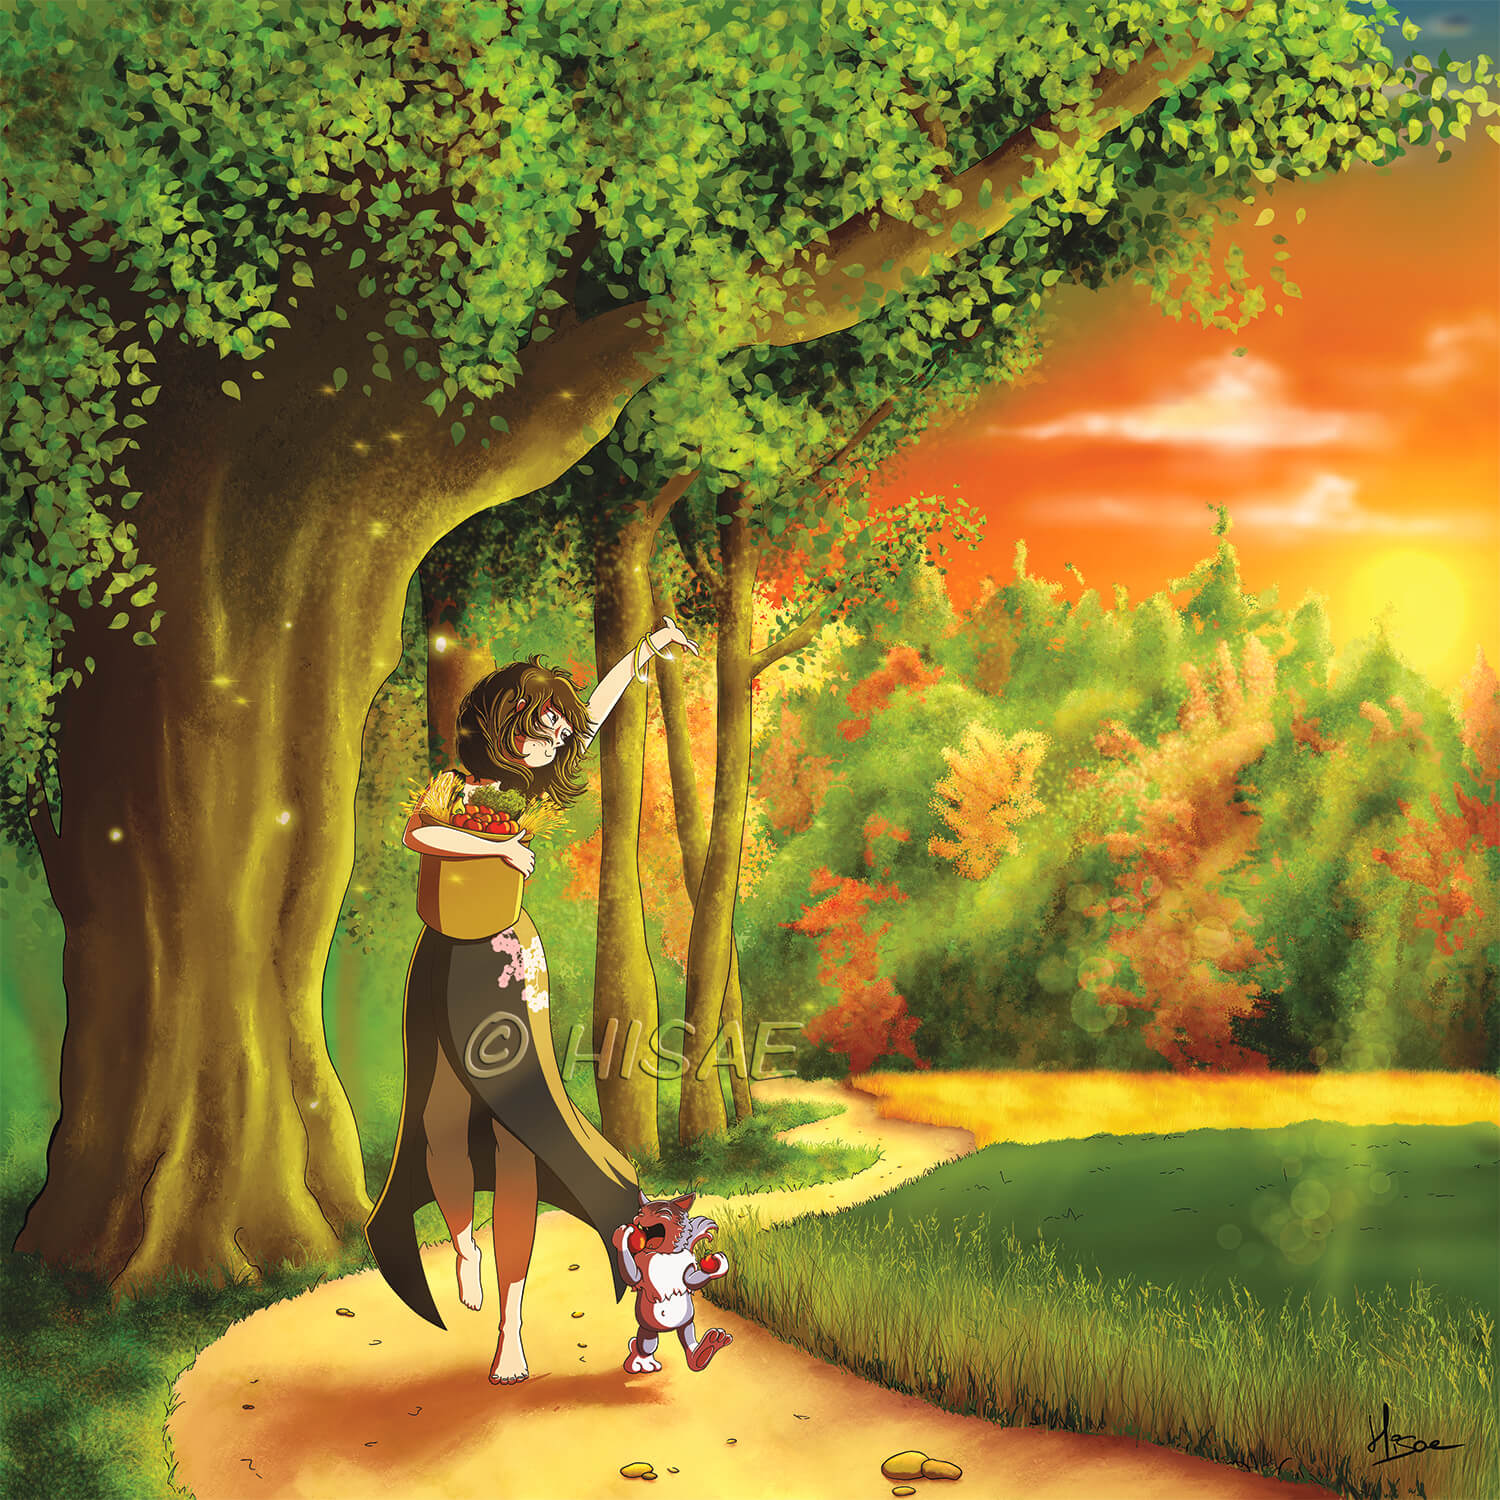 Dessin numérique de Mabon la fête paienne de l'équinoxe d'automne en septembre, représentant une femme près d'un bois saluant la nature, les bras chargés de fruits, légumes et céréales. Un chat marche à ses côté et croque une pomme ©Hisae illustrations